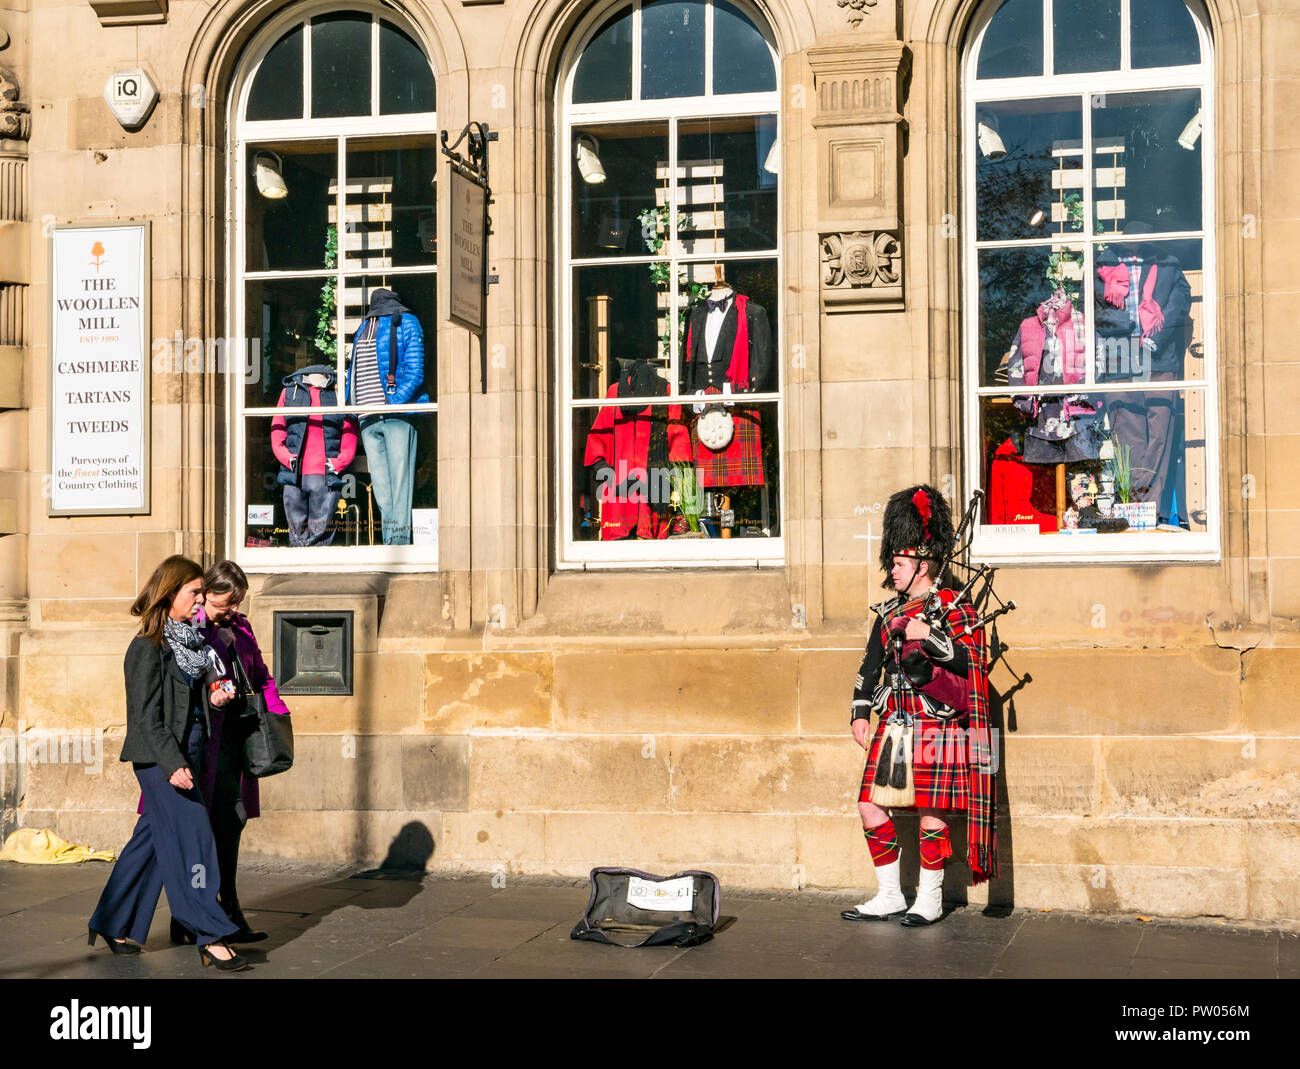 Frauen, die in schottischer Militäruniform an Straßenbusern vorbeigehen, mit Kilt, Bärenfellhut, der Dudelsäcke spielt, Royal Mile, Edinburgh, Schottland, Großbritannien Stockfoto